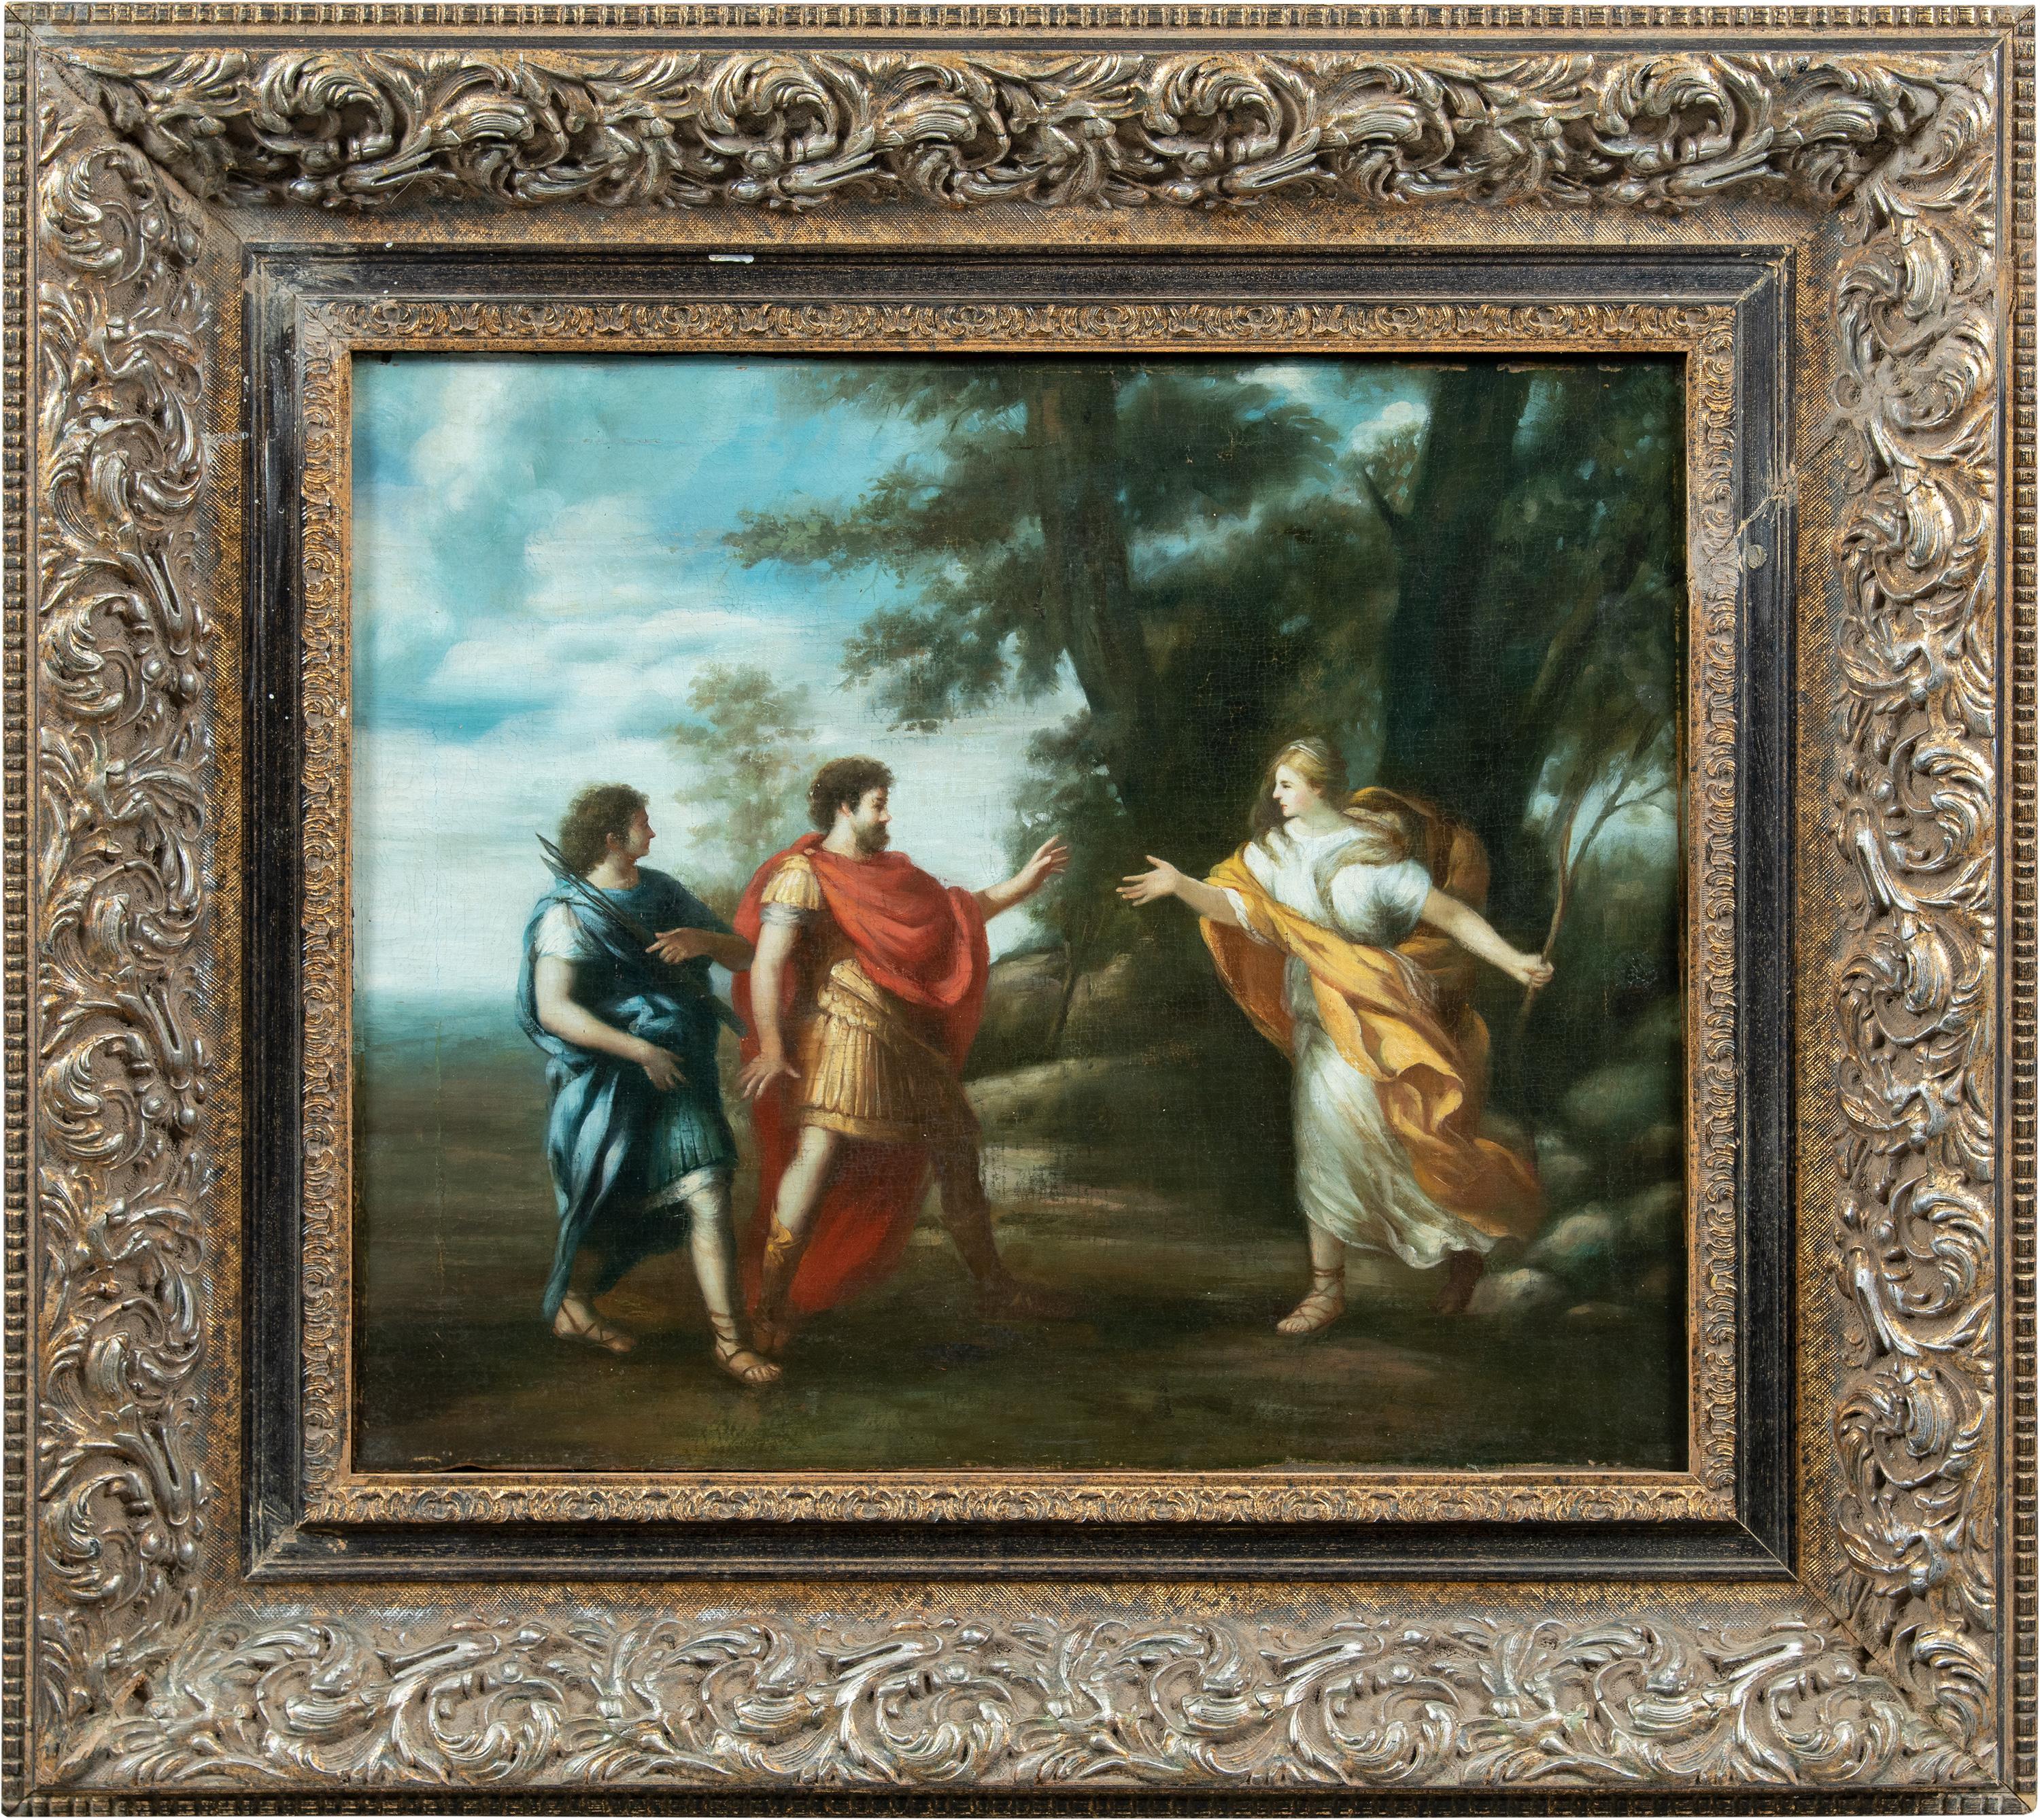 Unknown Figurative Painting - Follower of Pietro da Cortona- 18th-19th century painting - Venus Aeneas - Italy